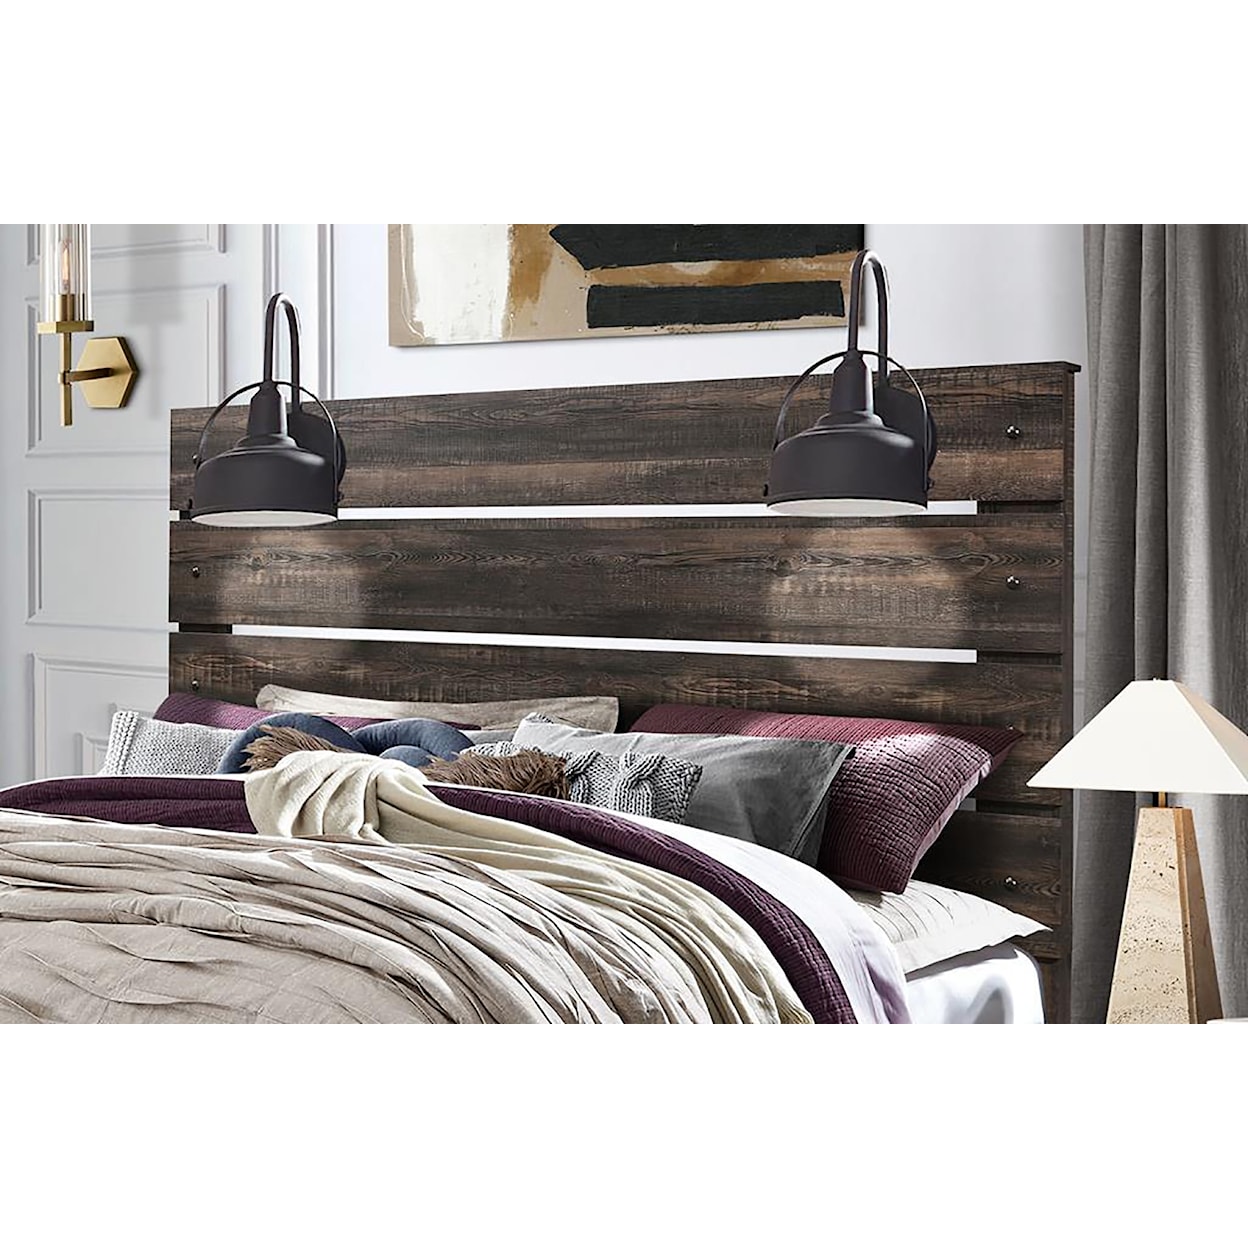 Global Furniture LINWOOD Dark Oak Queen Bed